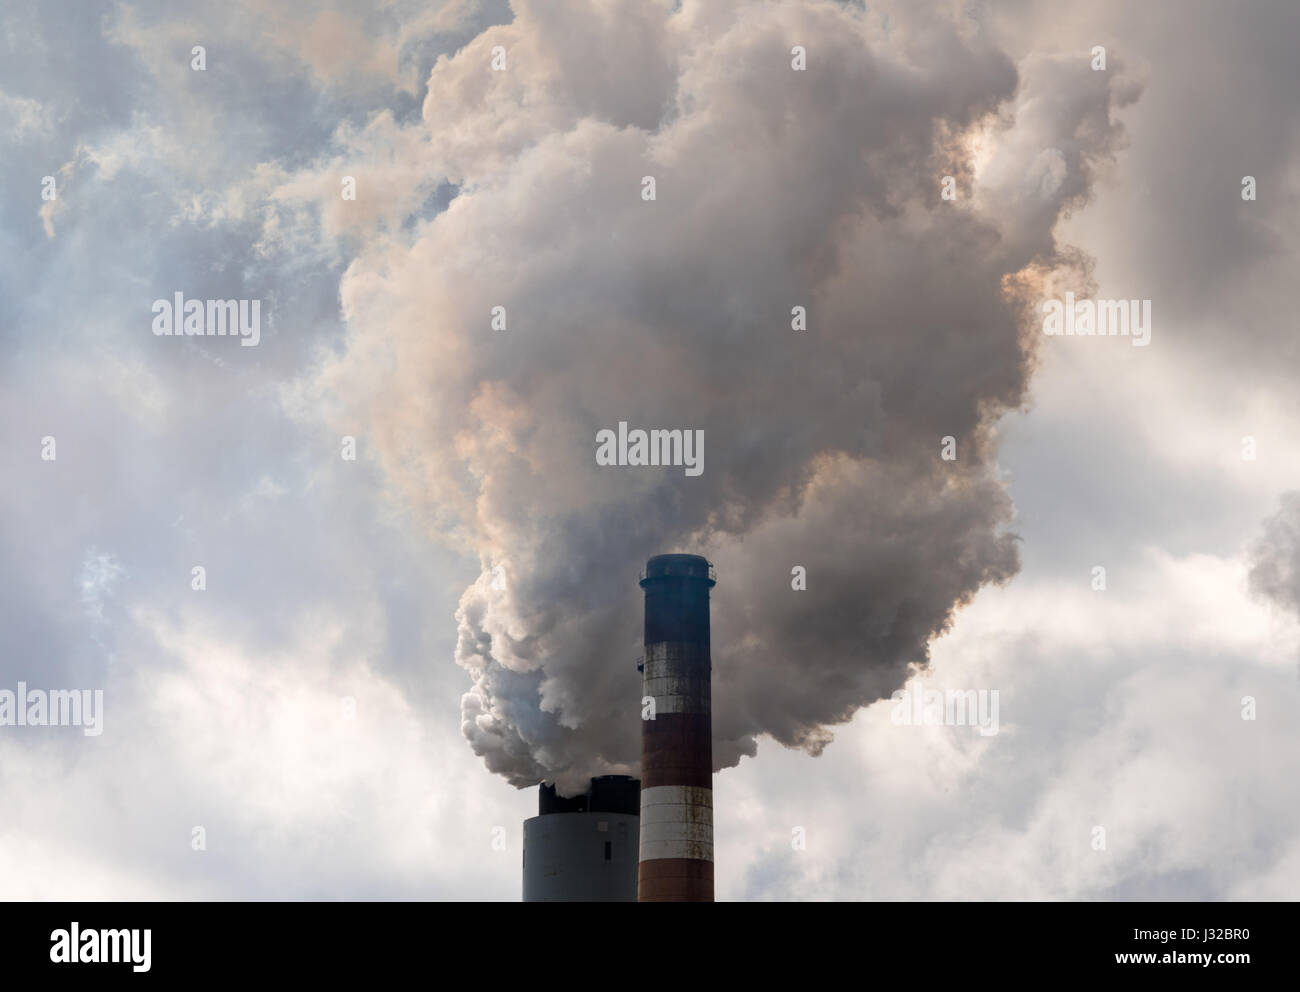 La fumée et la pollution de la cheminée d'une centrale électrique au charbon industiral, USA Banque D'Images